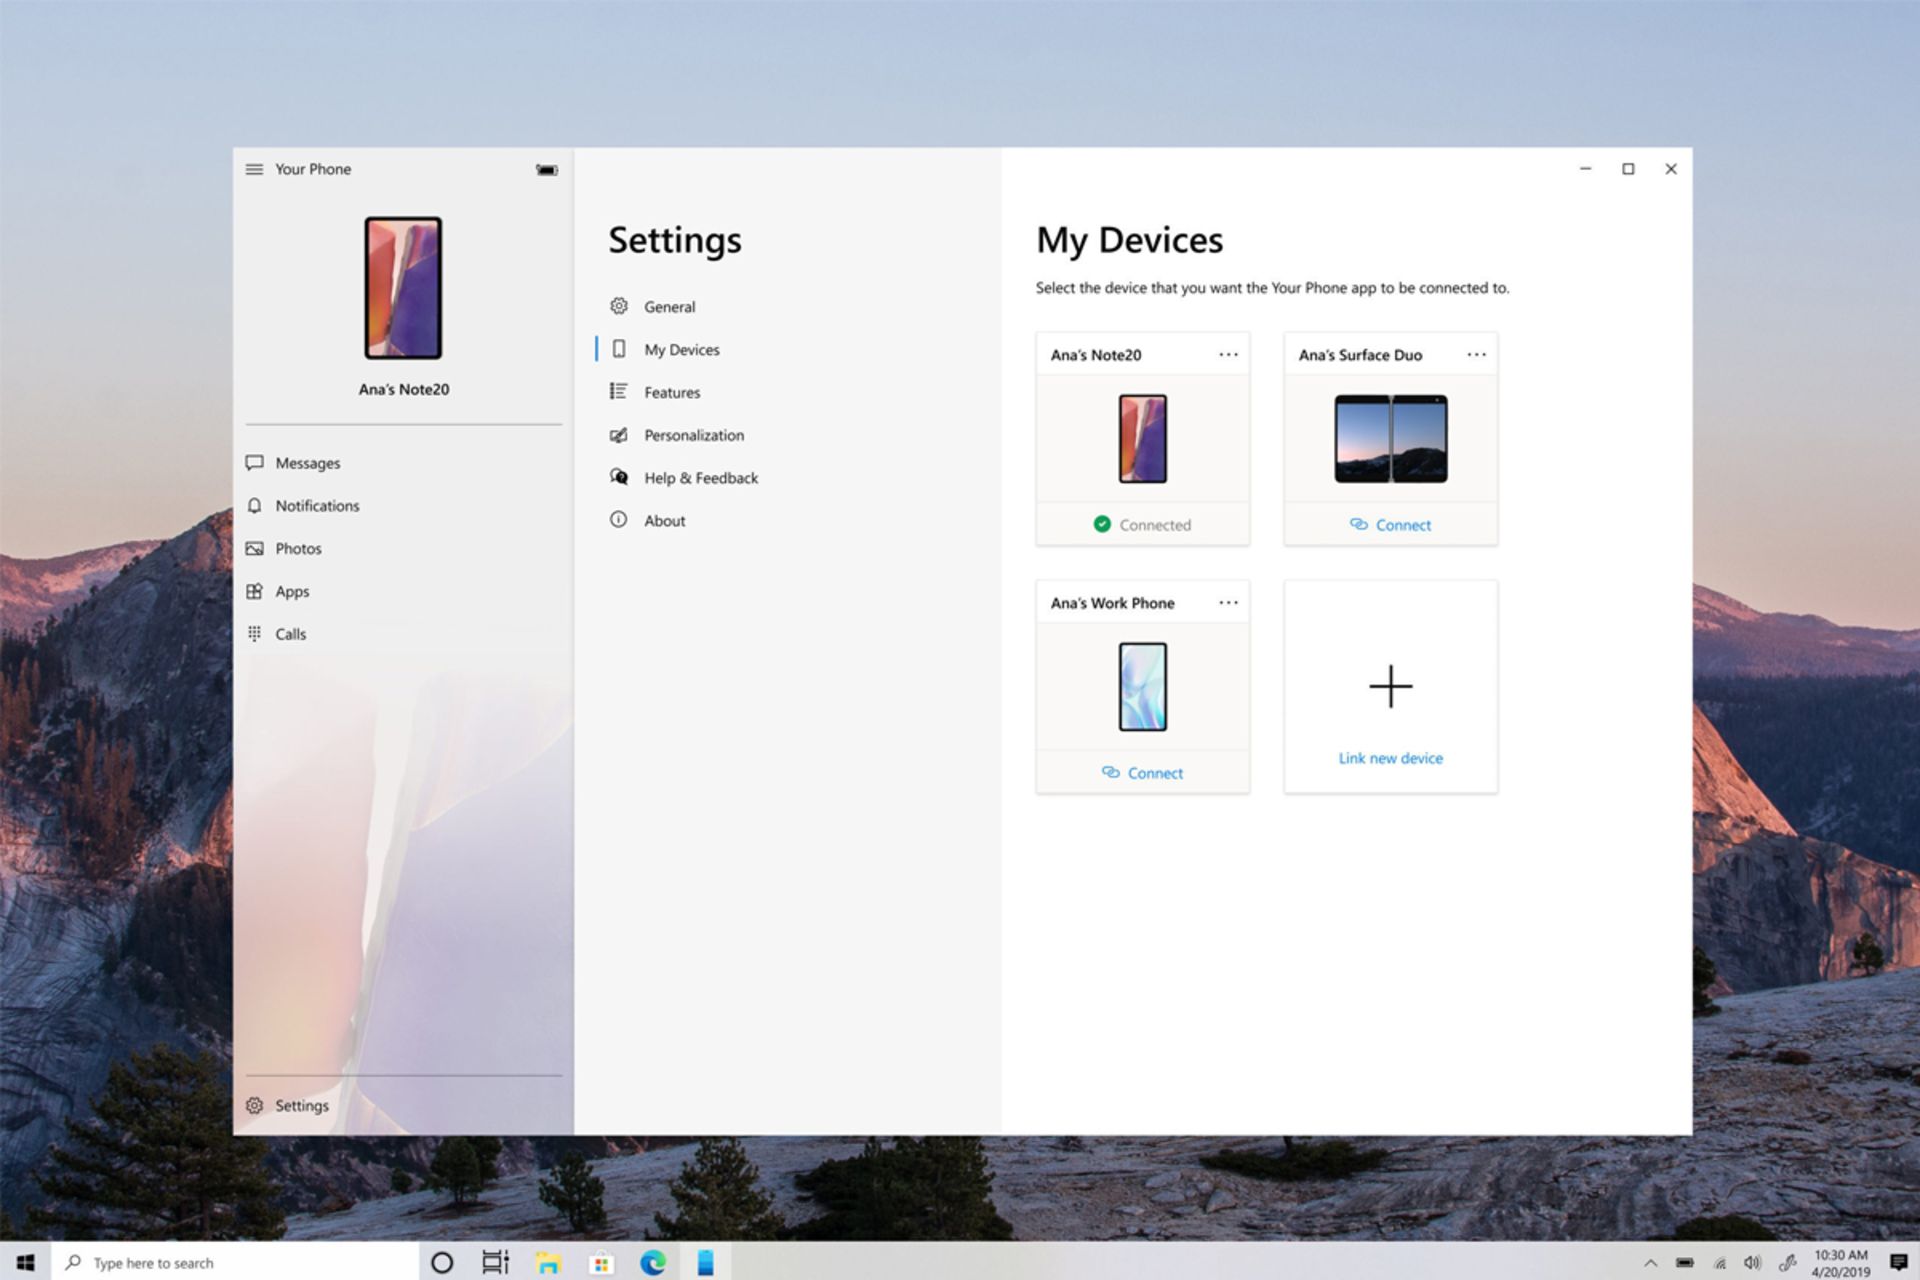 پنجره اپلیکیشن Your Phone در ویندوز ۱۰ / Windows 10 با آپدیت جدید